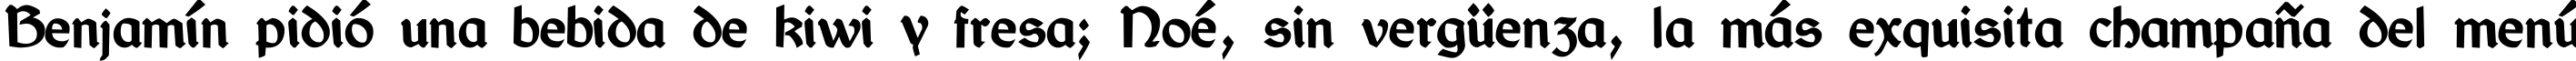 Пример написания шрифтом Bretagne Gaelic DemiBold текста на испанском